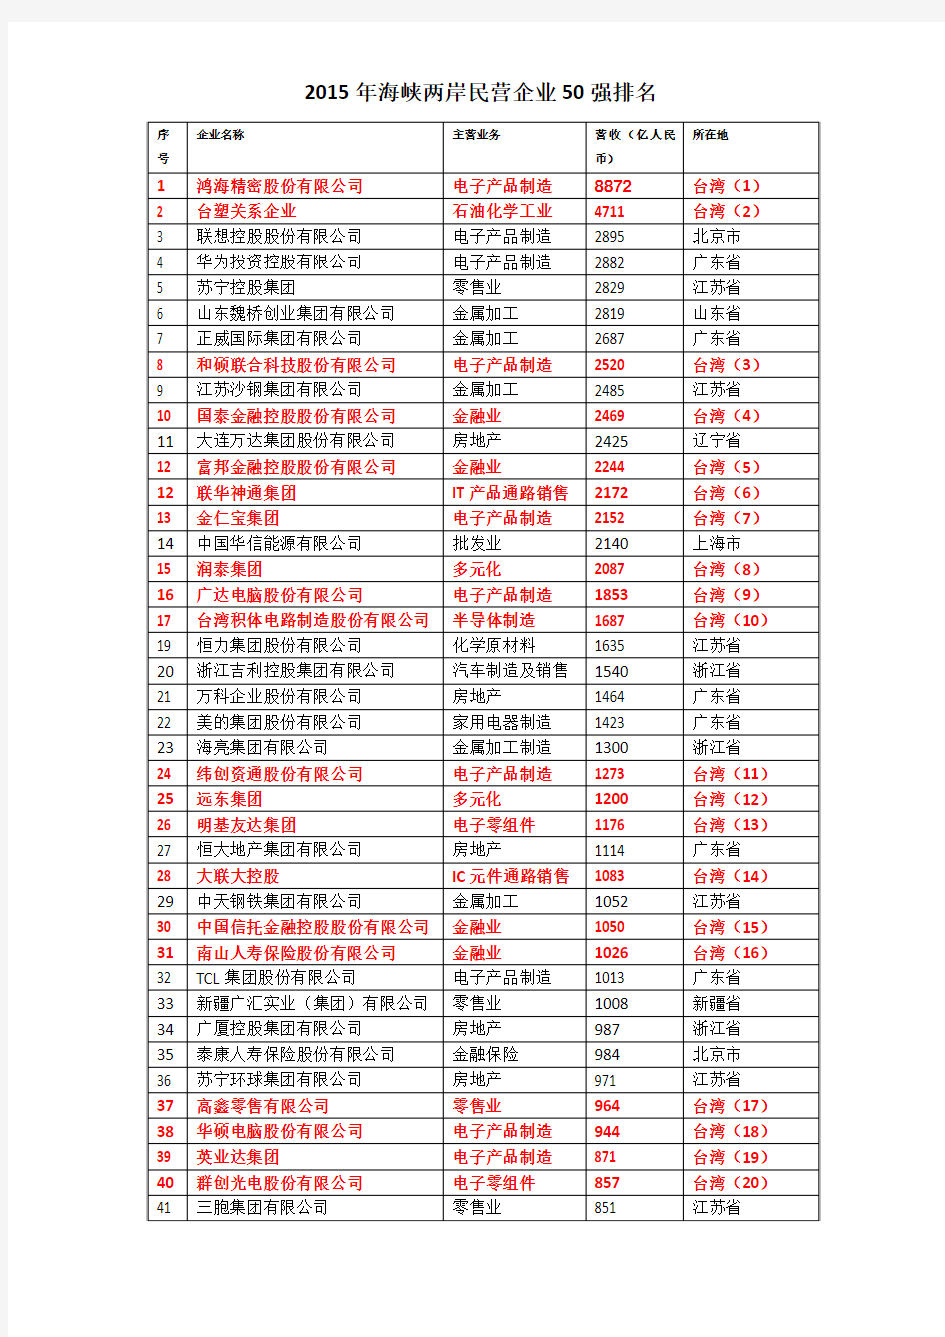 2015年大陆及台湾民营企业50强排名